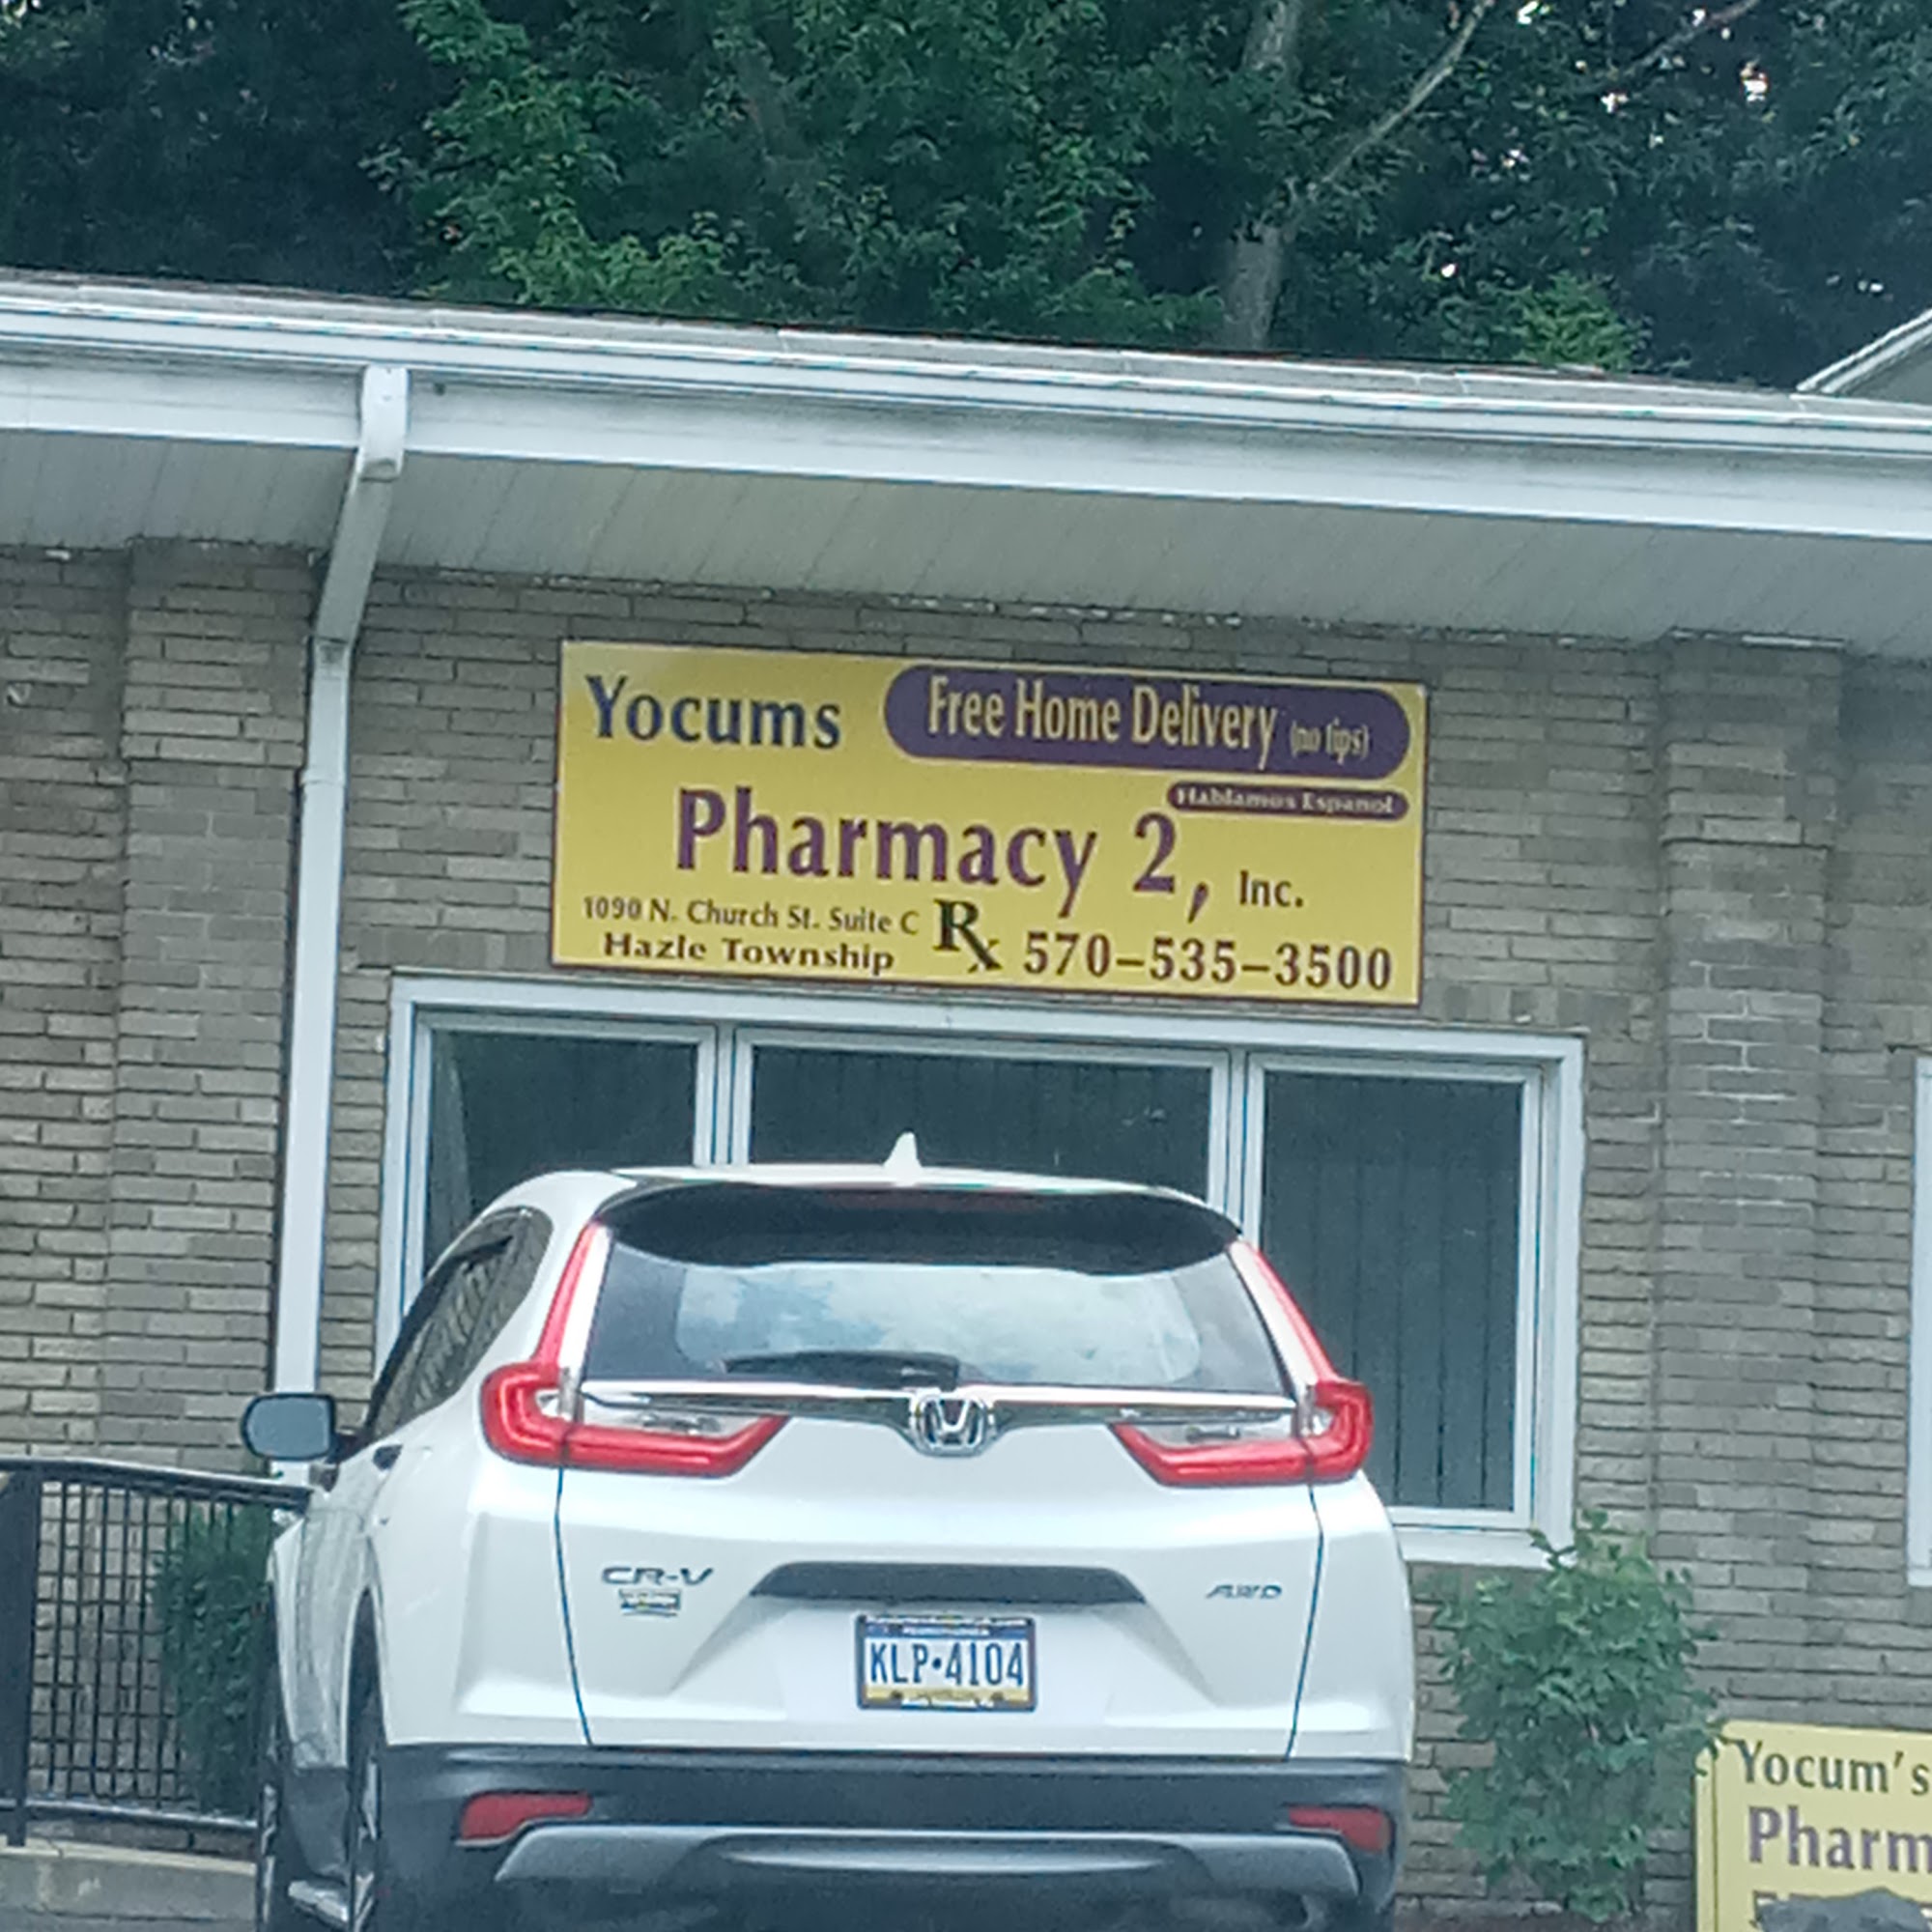 Yocums Pharmacy 2 Inc